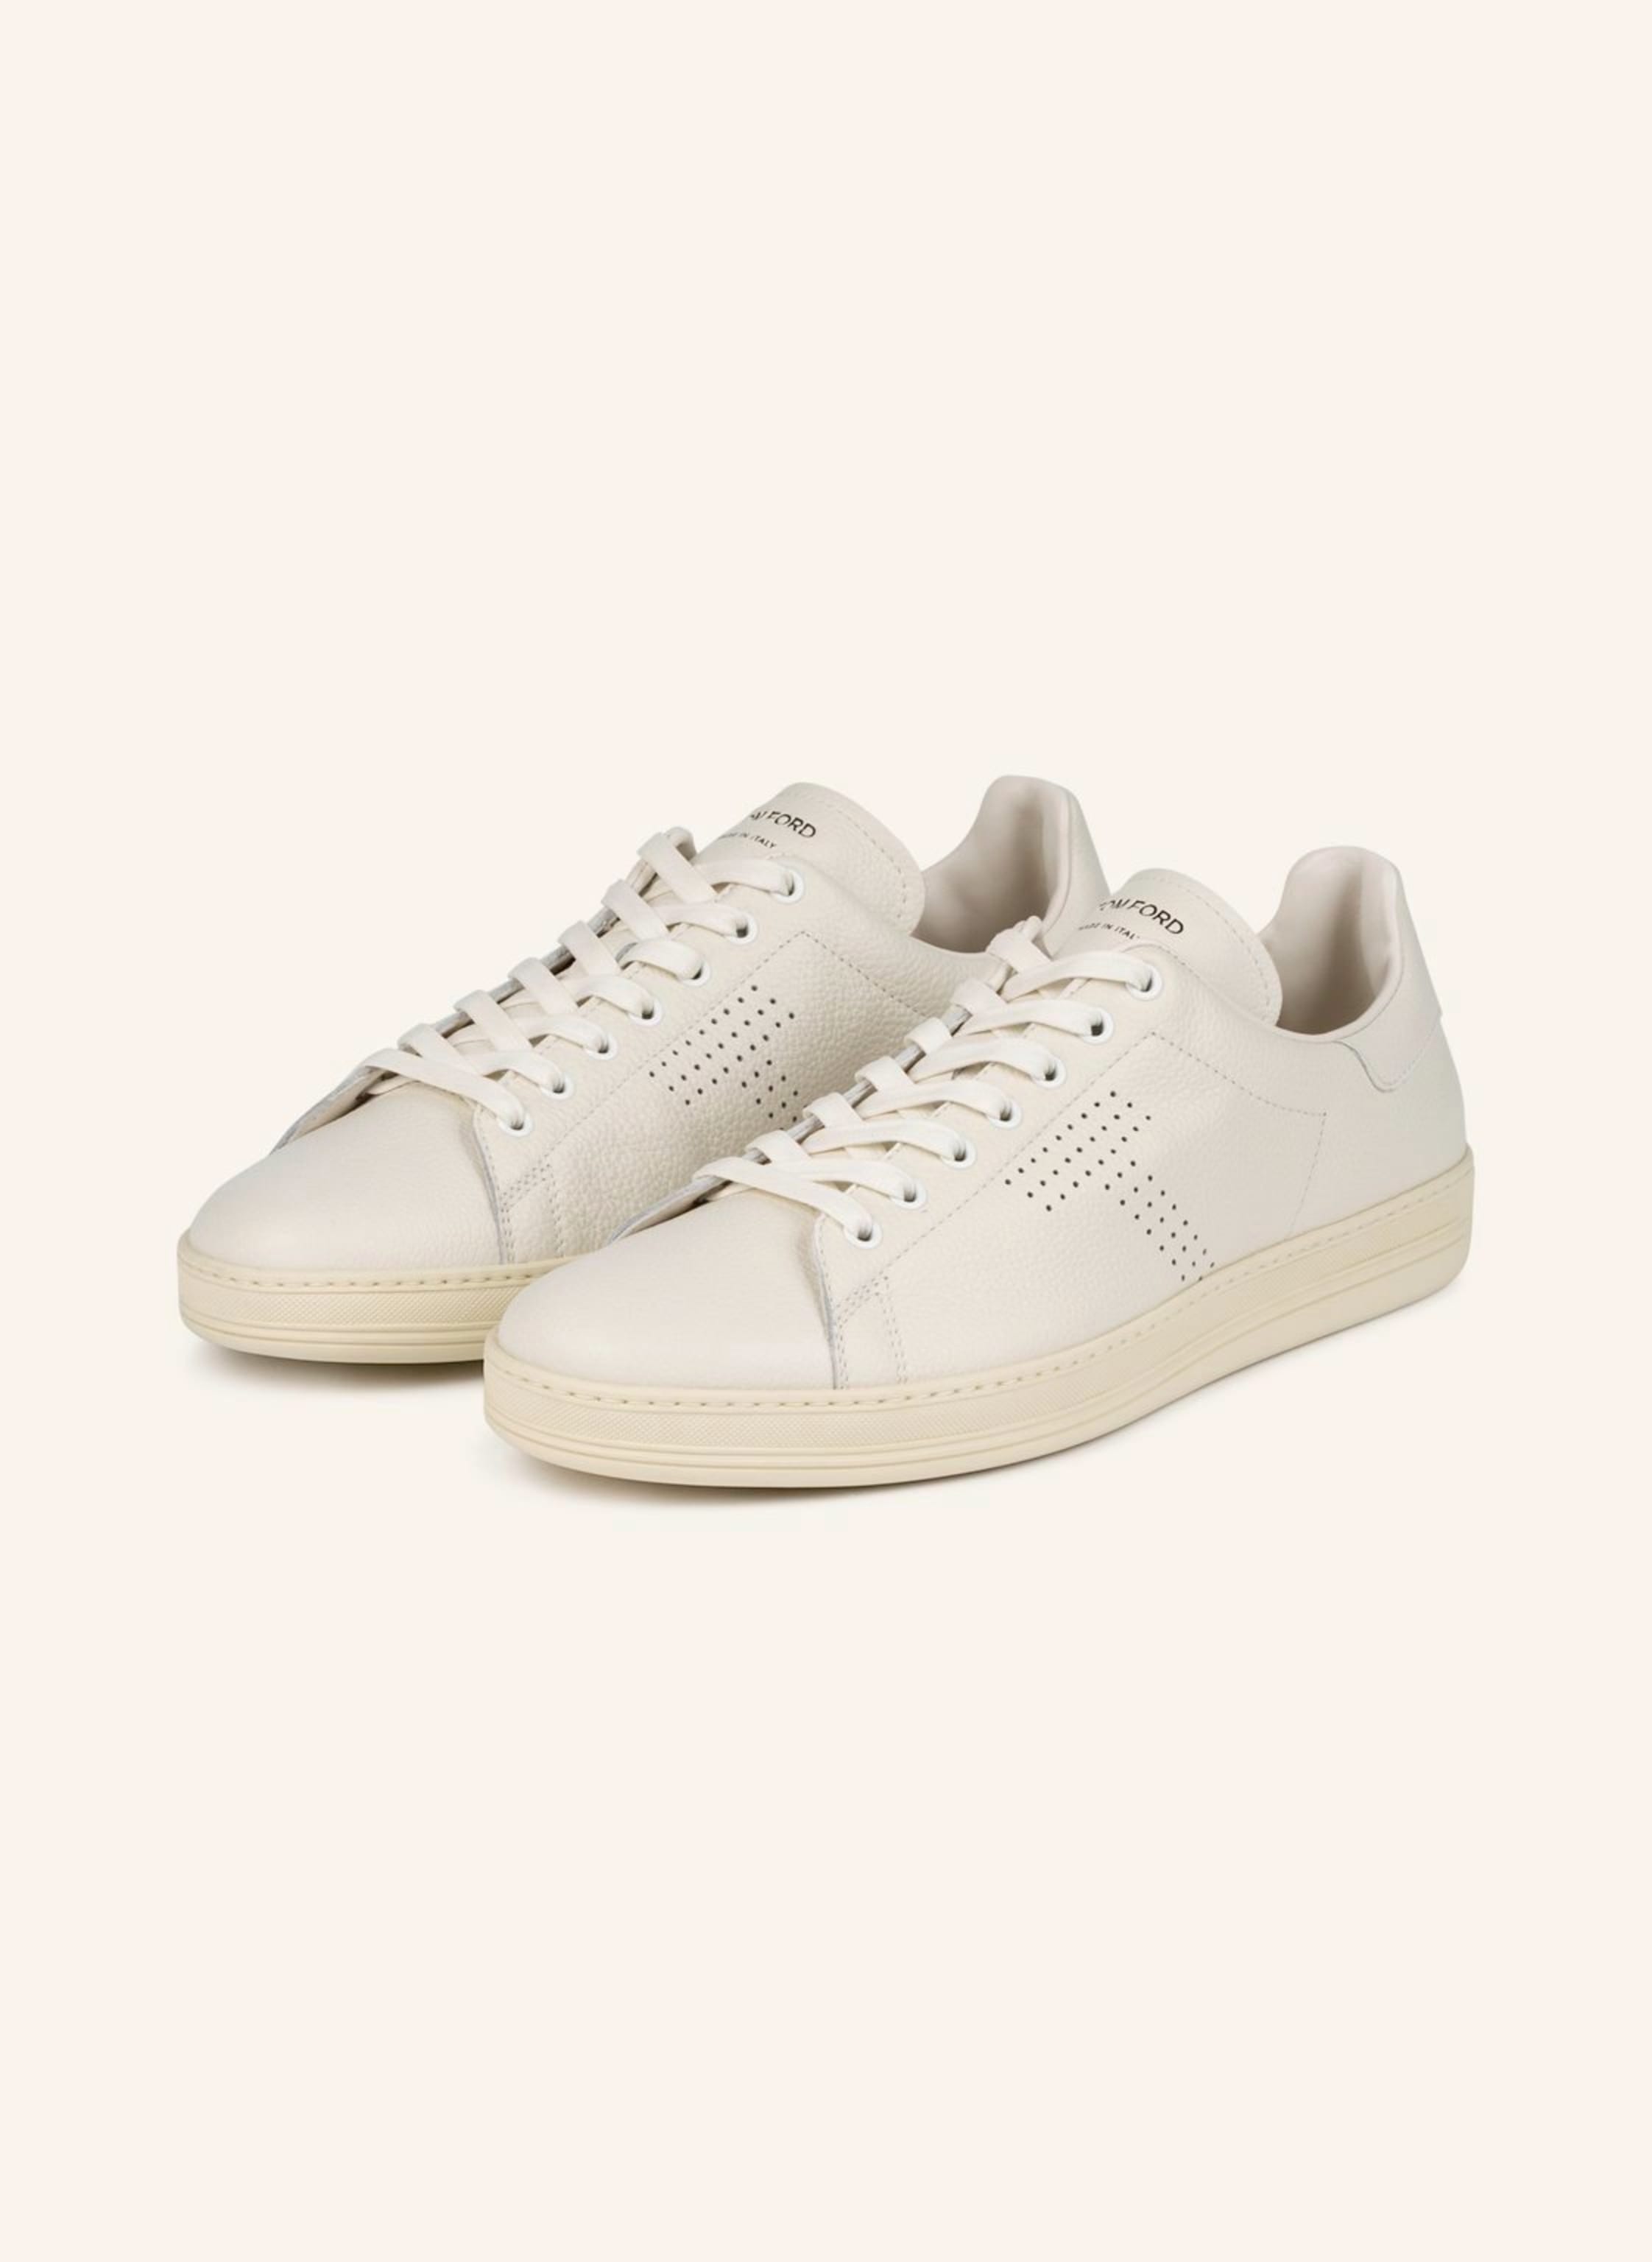 TOM FORD Sneakers in white | Breuninger